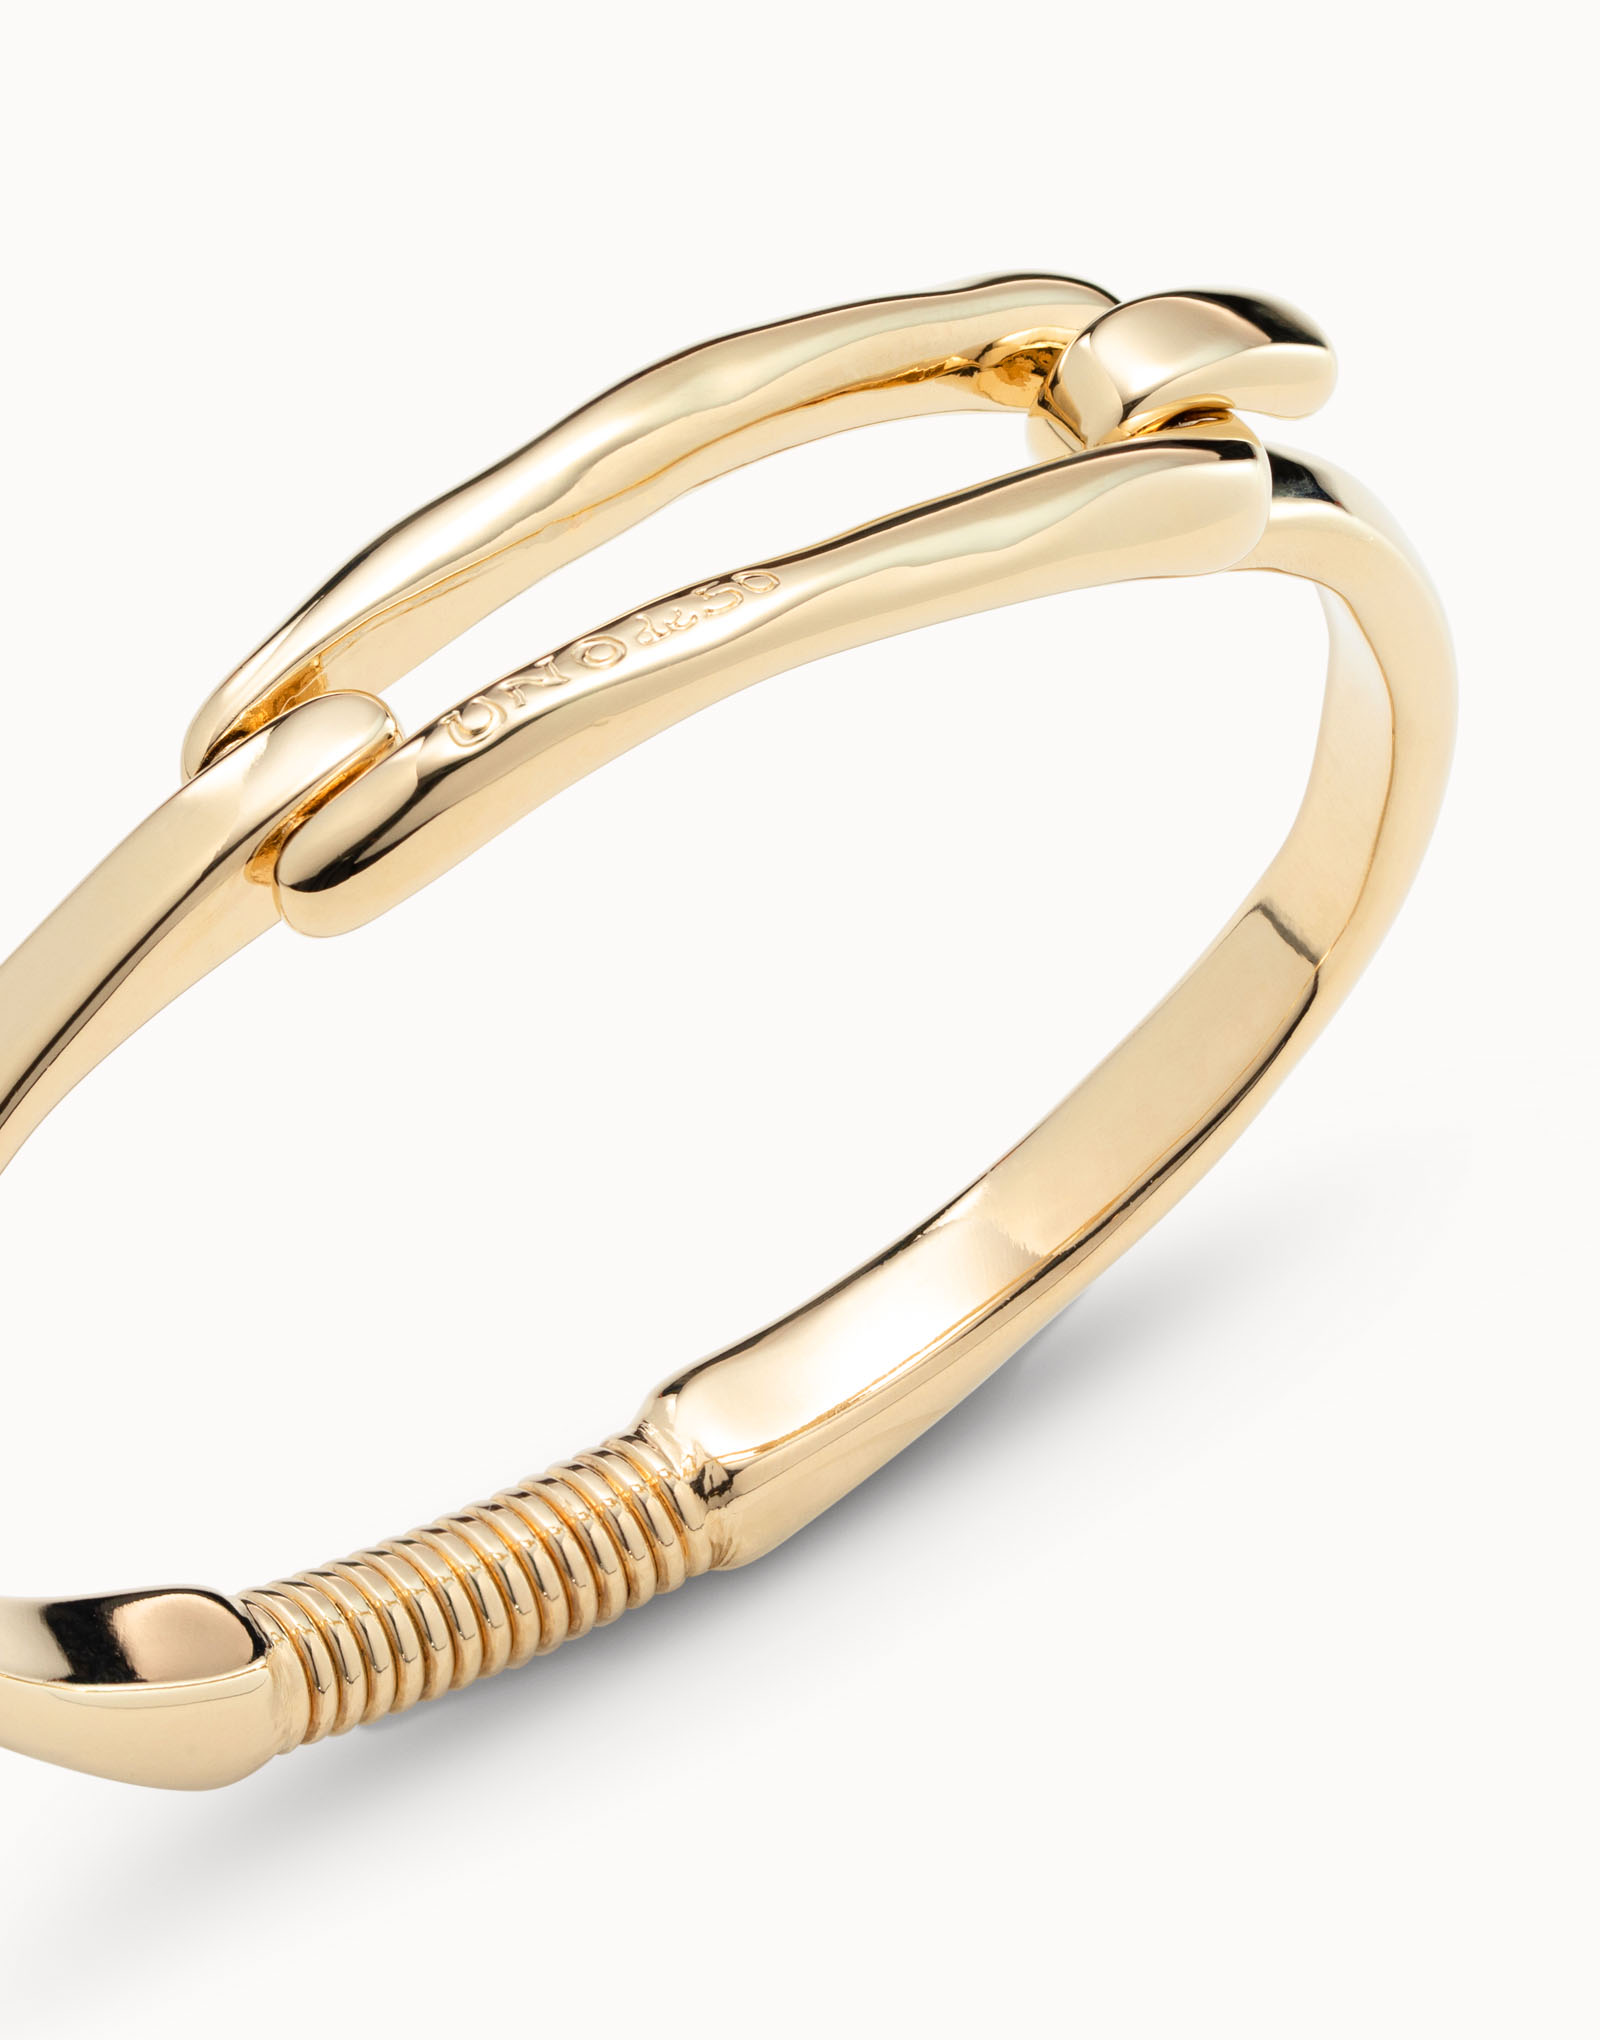 18K gold-plated buckle bracelet, Golden, large image number null